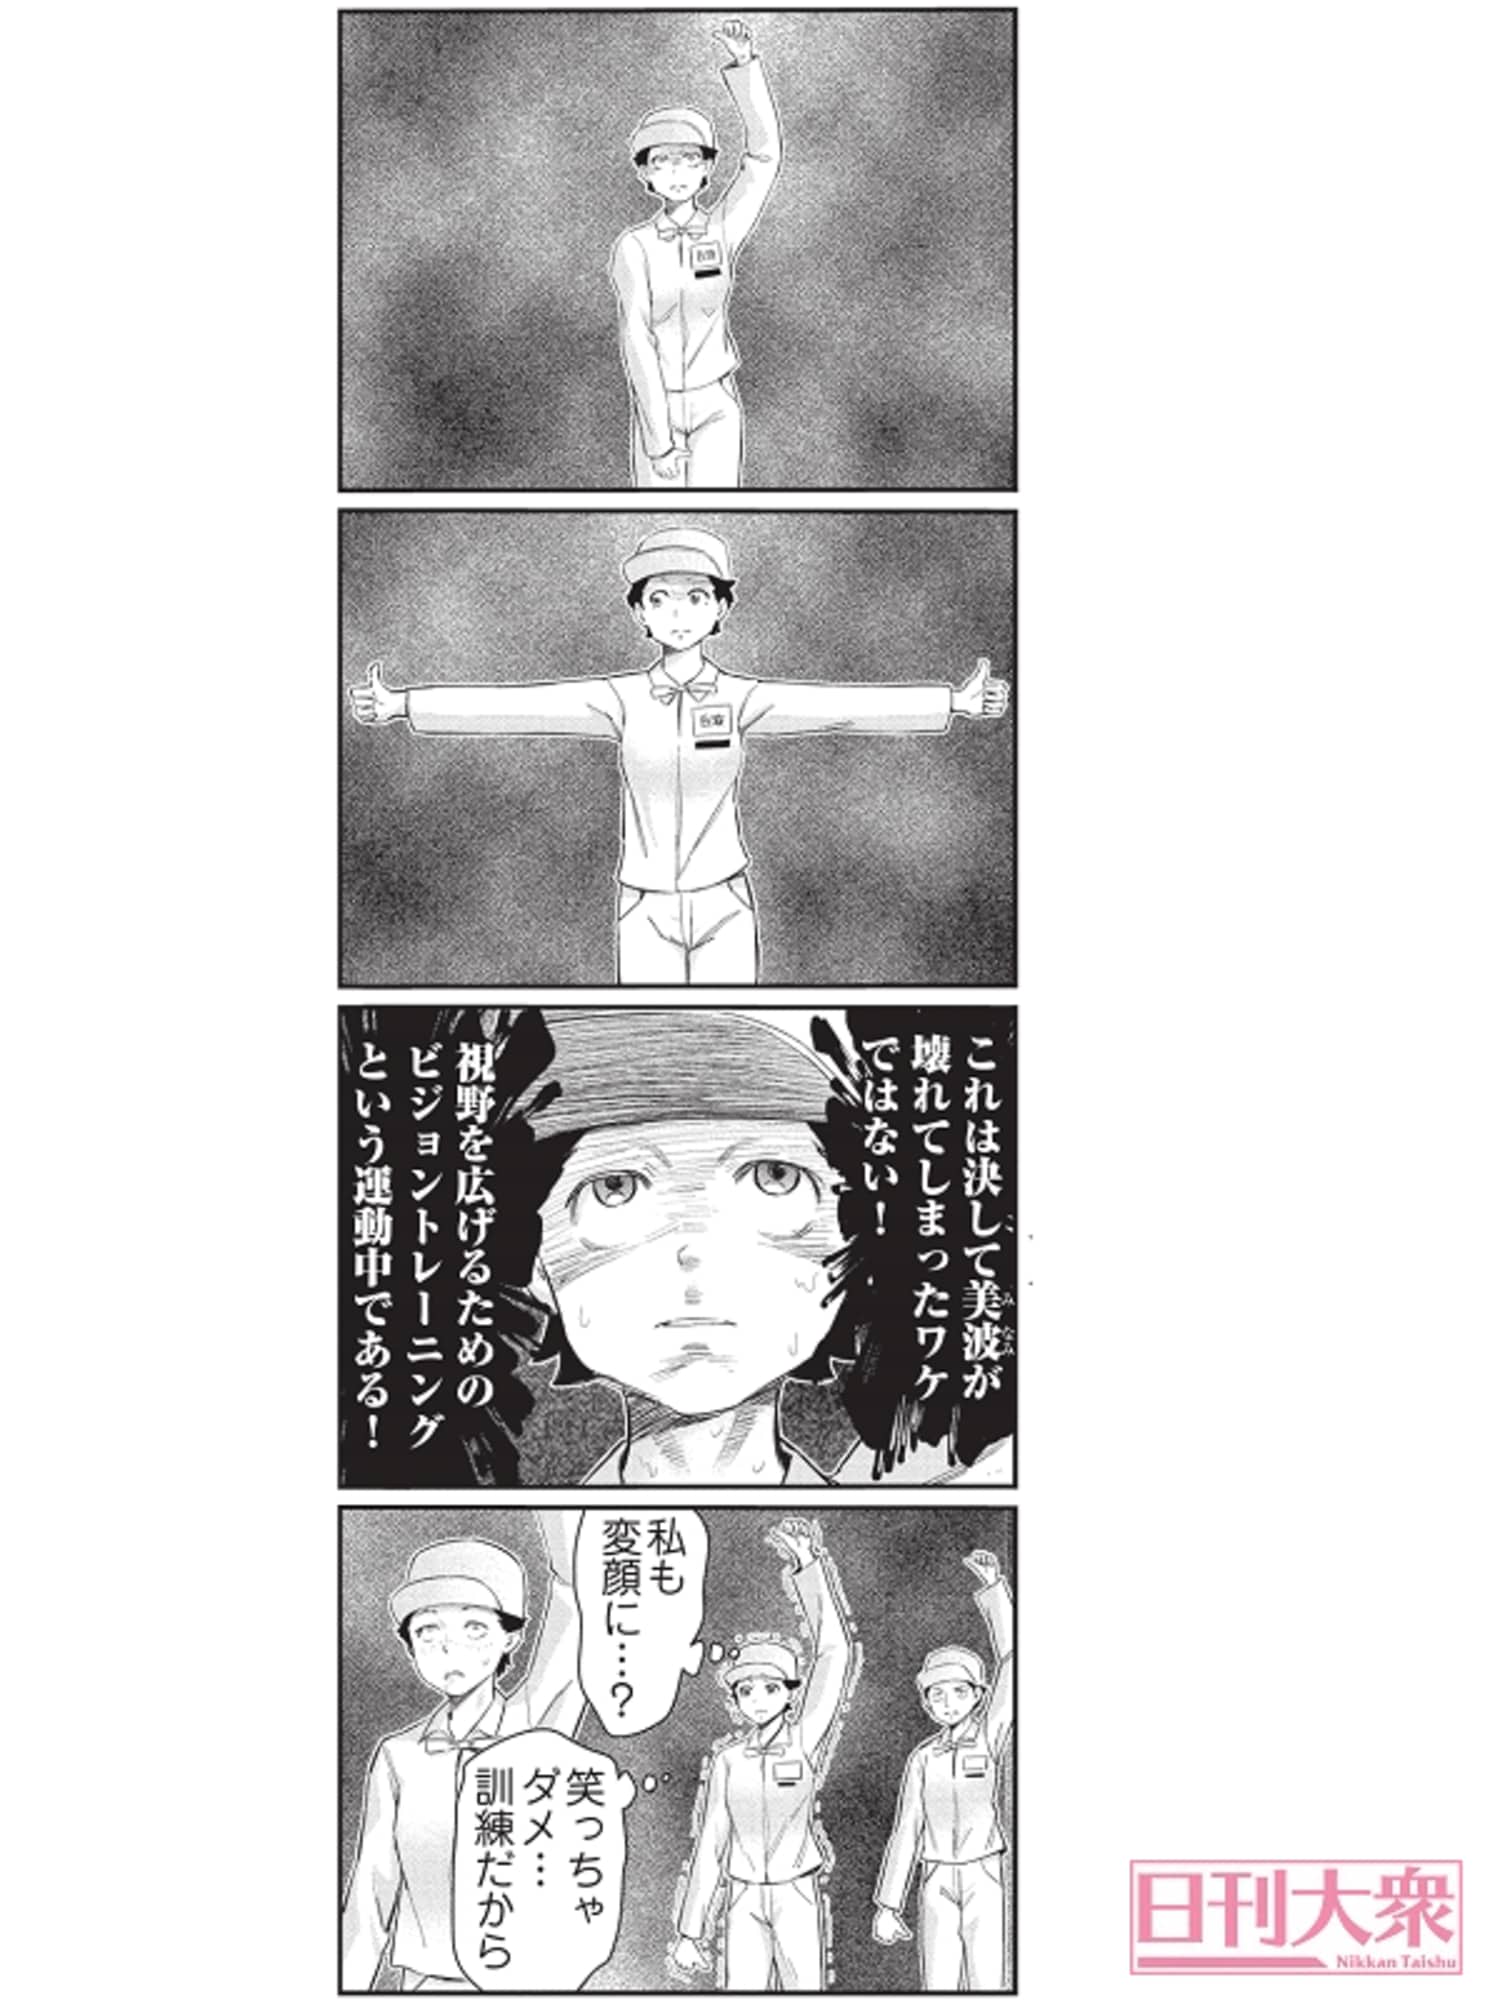 （週刊大衆連動）4コマ漫画『ボートレース訓練生・美波』第16話こぼれ話の画像